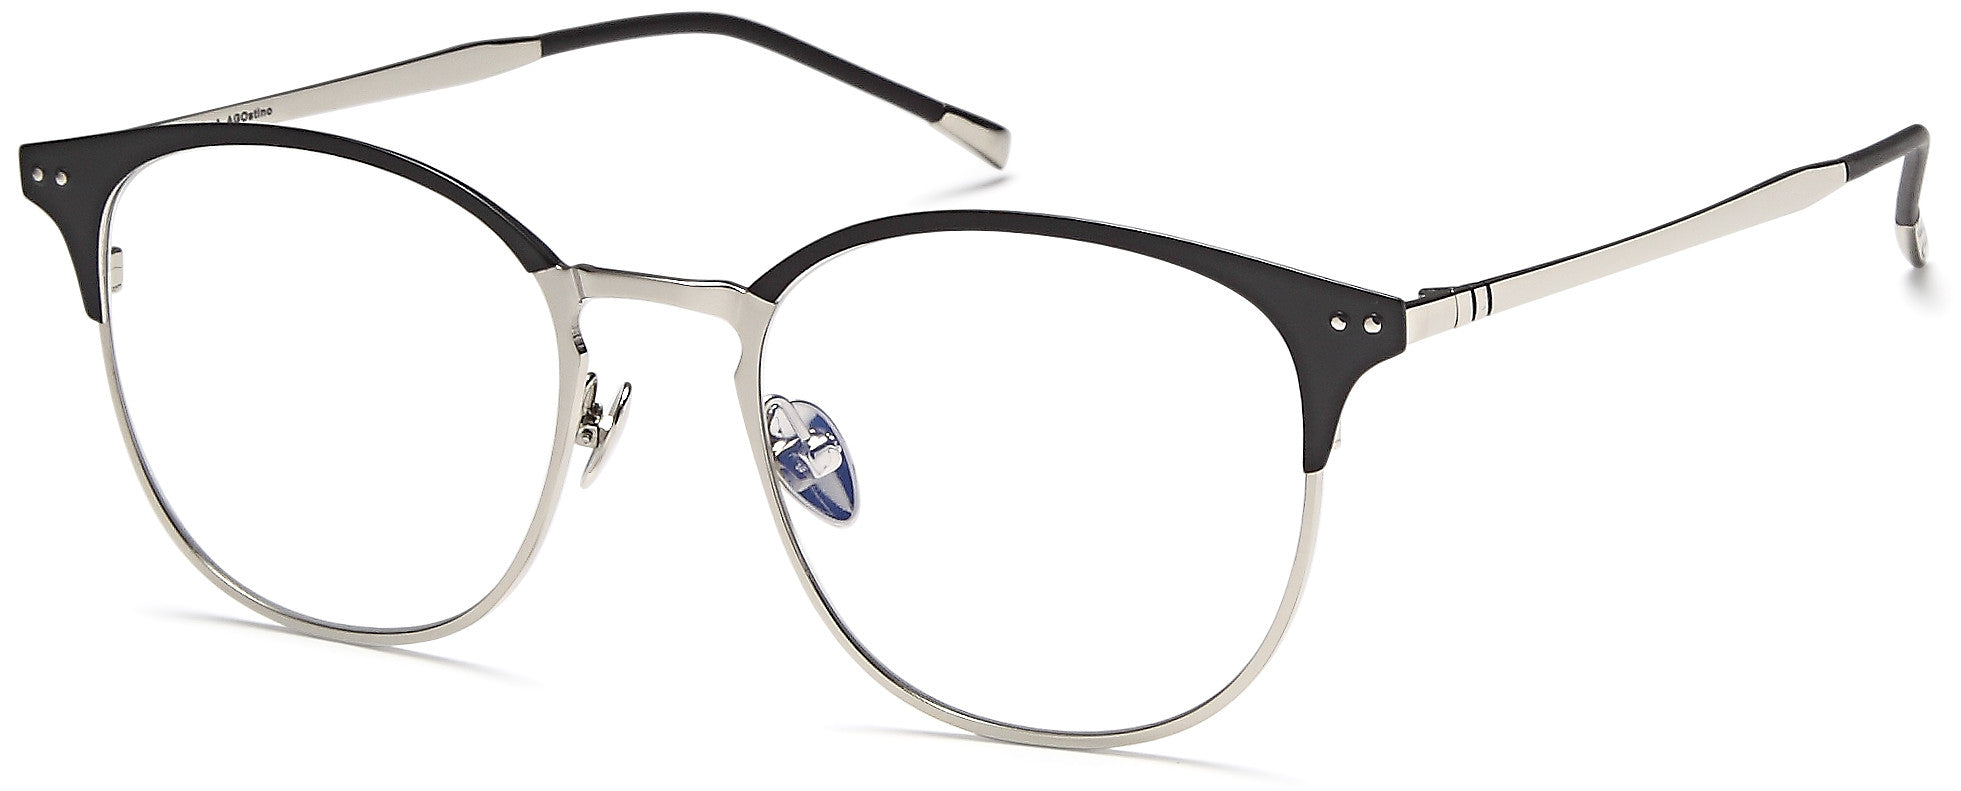 AGO Eyeglasses MF90004 - Go-Readers.com